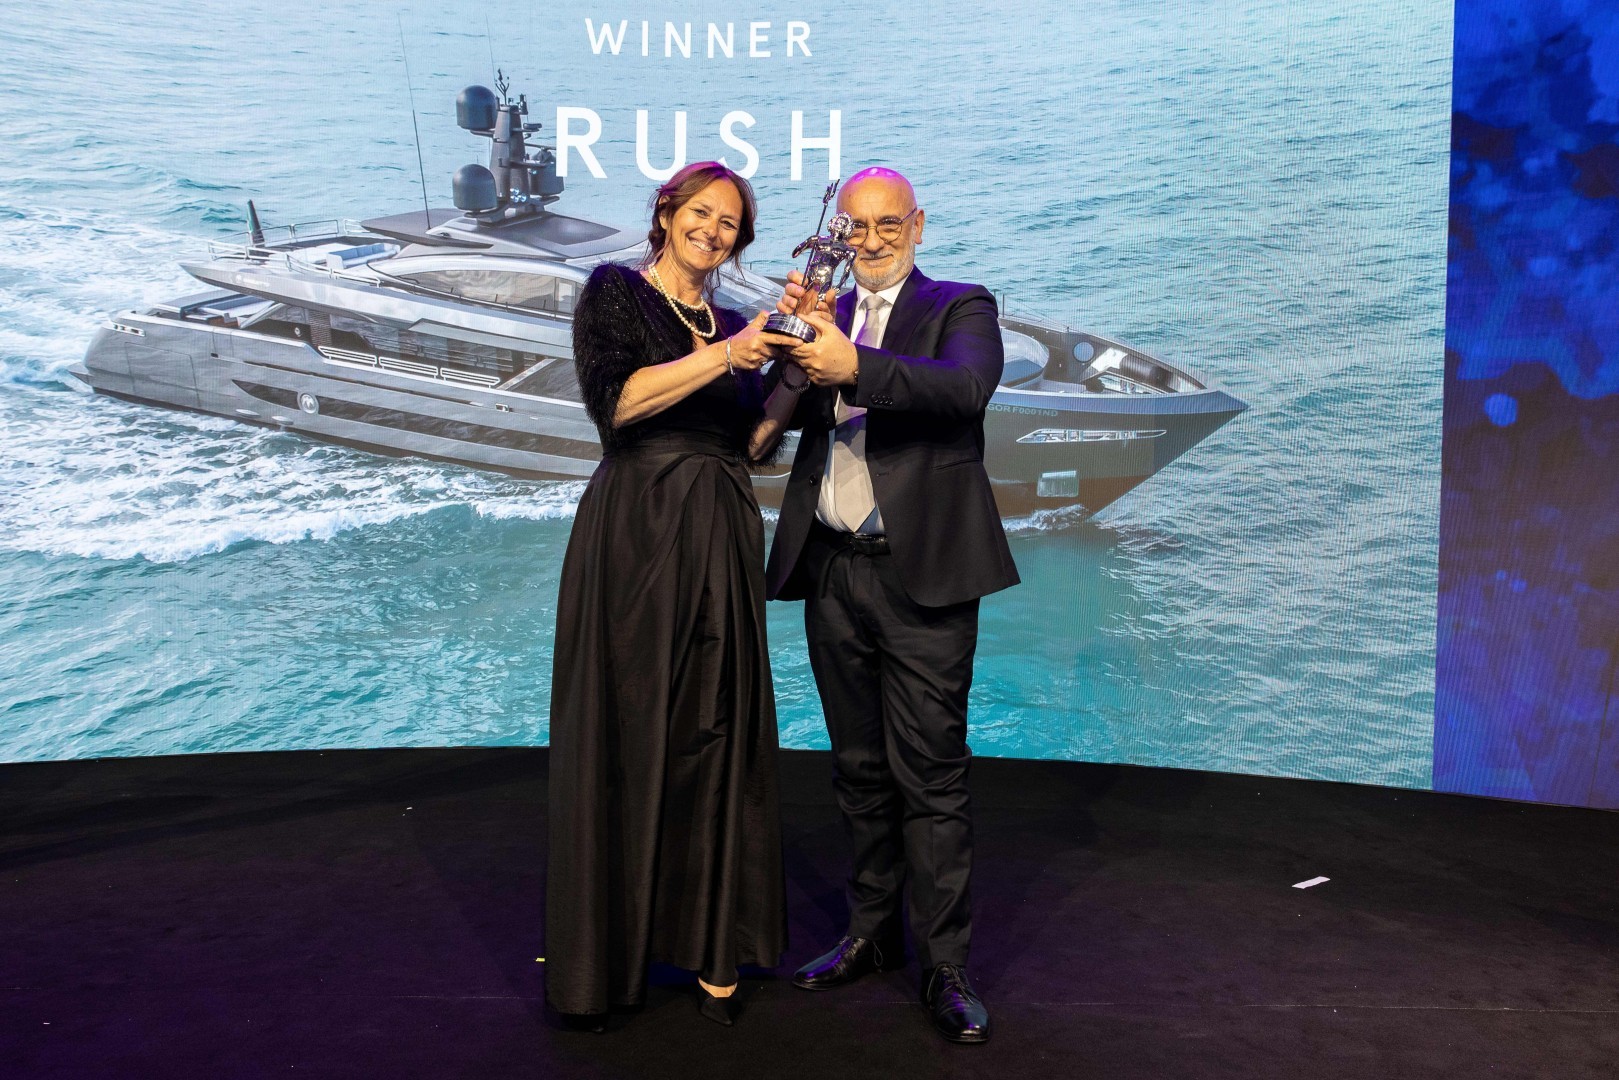 Baglietto Rush winner of the World Superyacht Award 2023